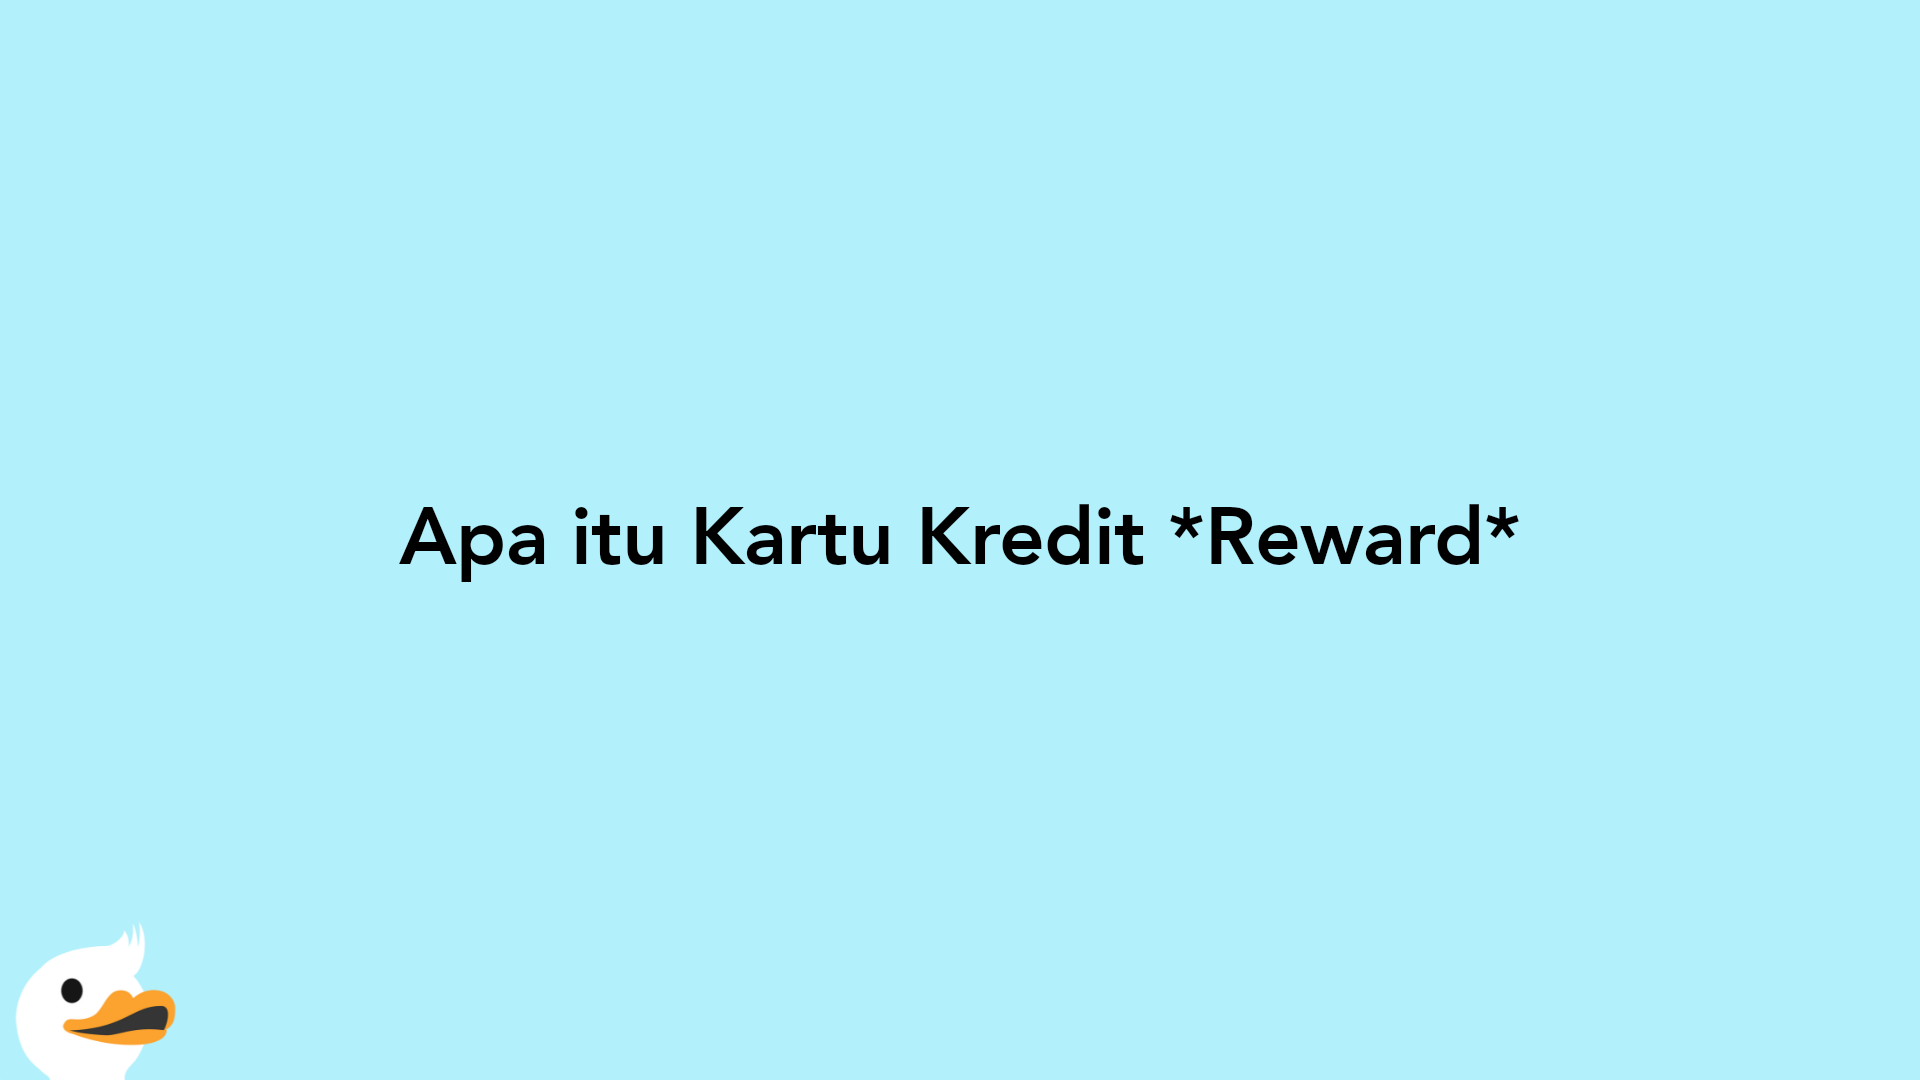 Apa itu Kartu Kredit Reward